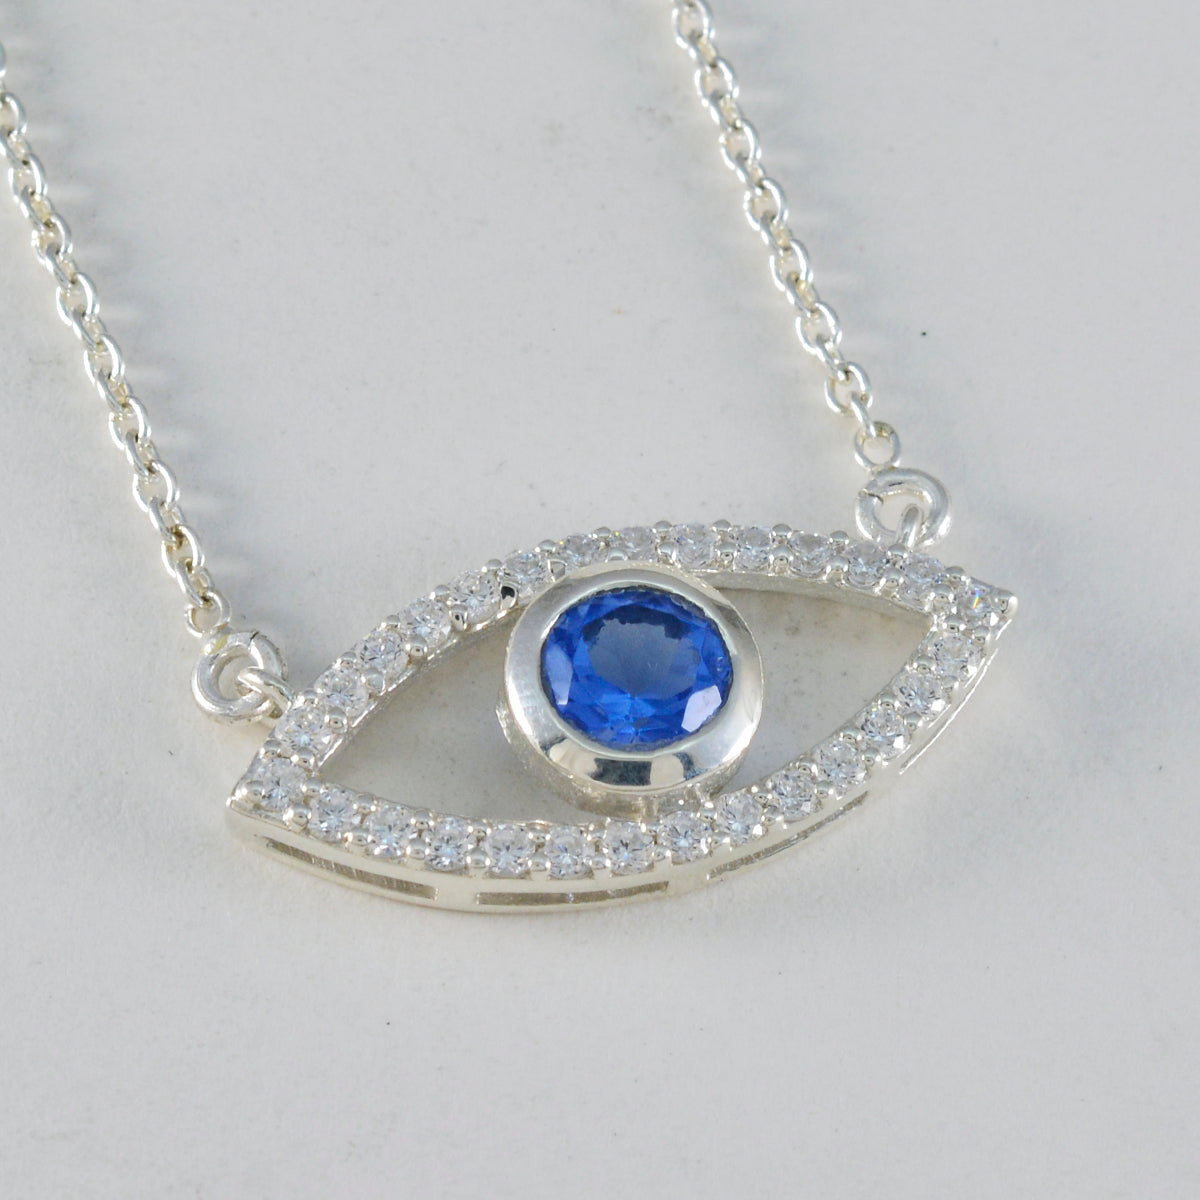 riyo fanciable gemma rotonda sfaccettata blu zaffiro blu cz 1145 ciondolo in argento sterling regalo per il compleanno